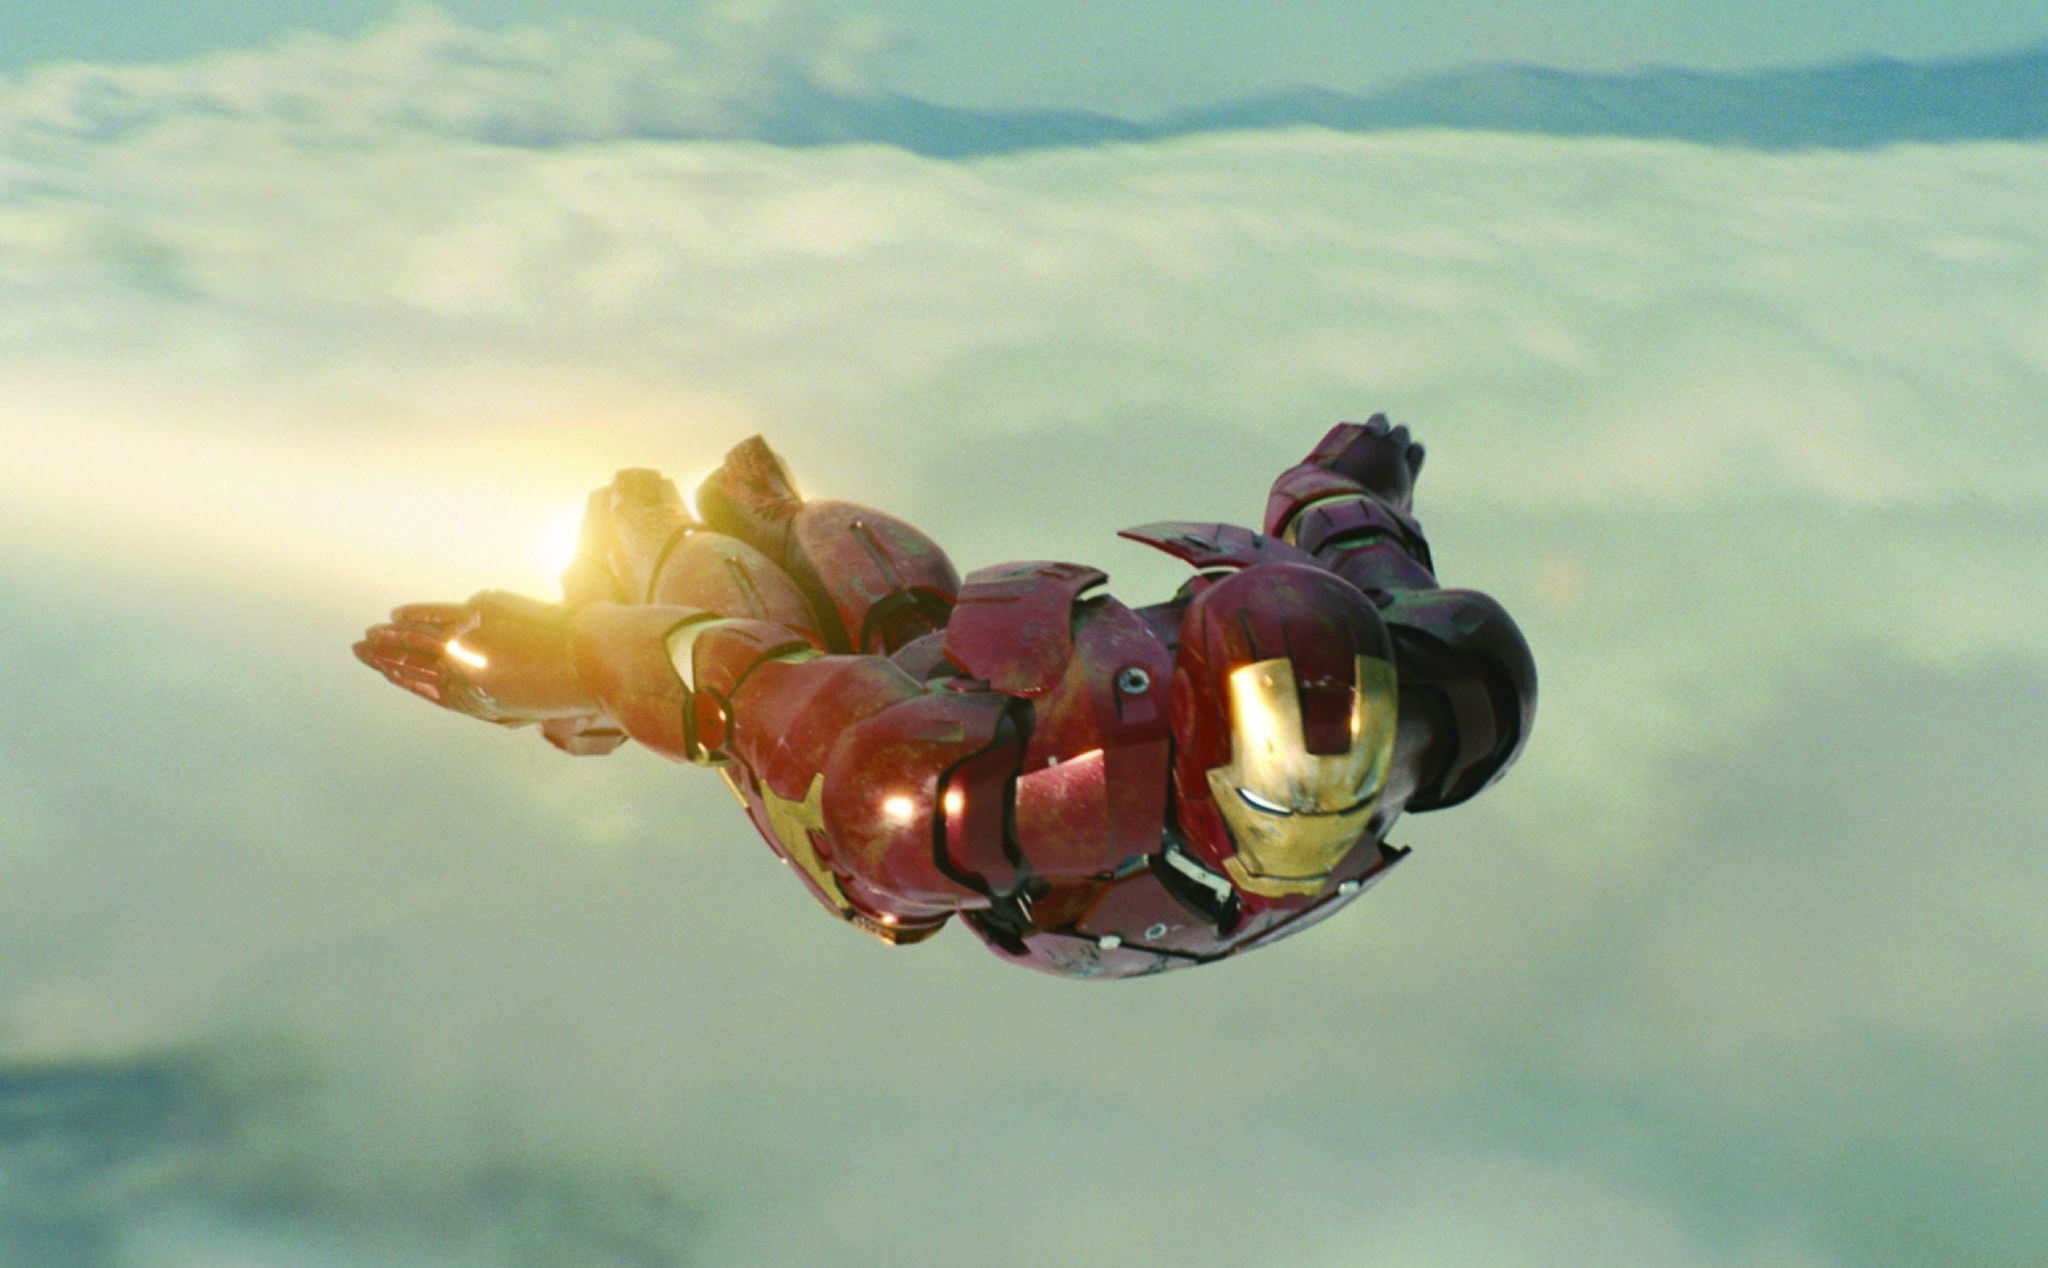 Tại sao Iron Man lại trở thành một trong những siêu anh hùng được yêu thích nhất của Marvel? Xem hình ảnh mới nhất của chúng tôi để tìm hiểu thêm về nhân vật này, từ thiết kế mũ giả cơ của Tony Stark đến bộ võ thuật sáng tạo của anh ta!